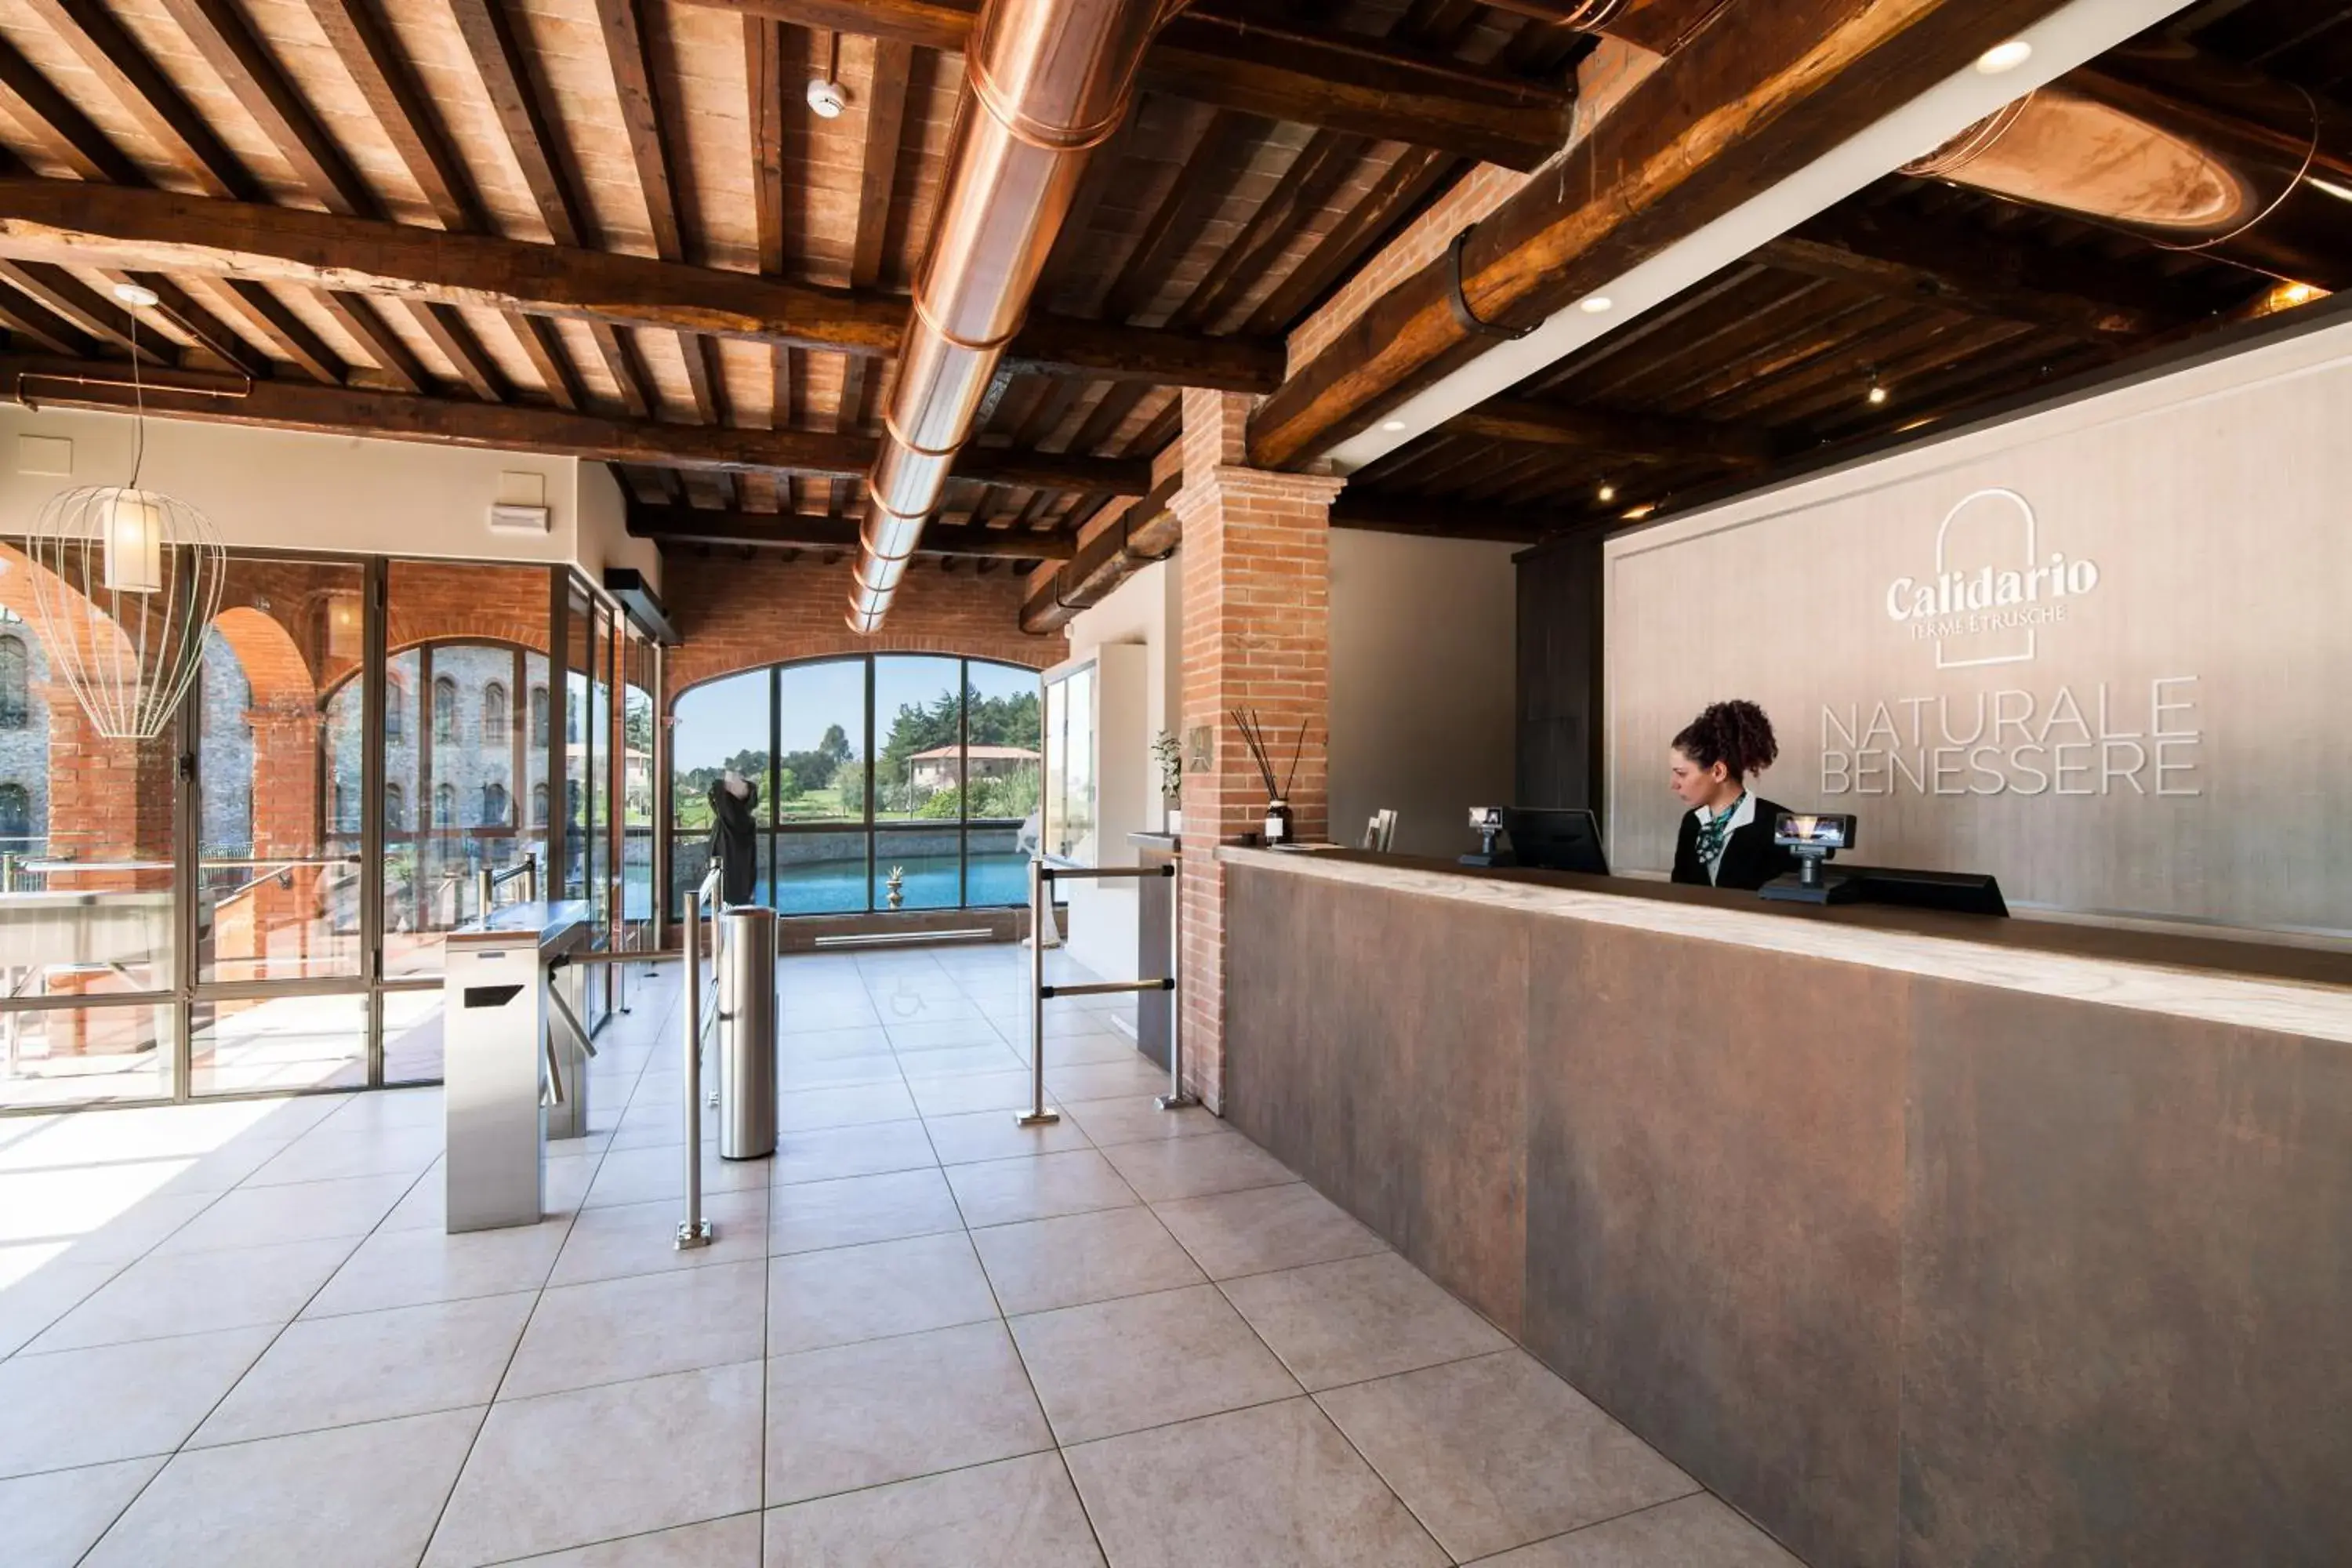 Lobby or reception in Calidario Terme Etrusche